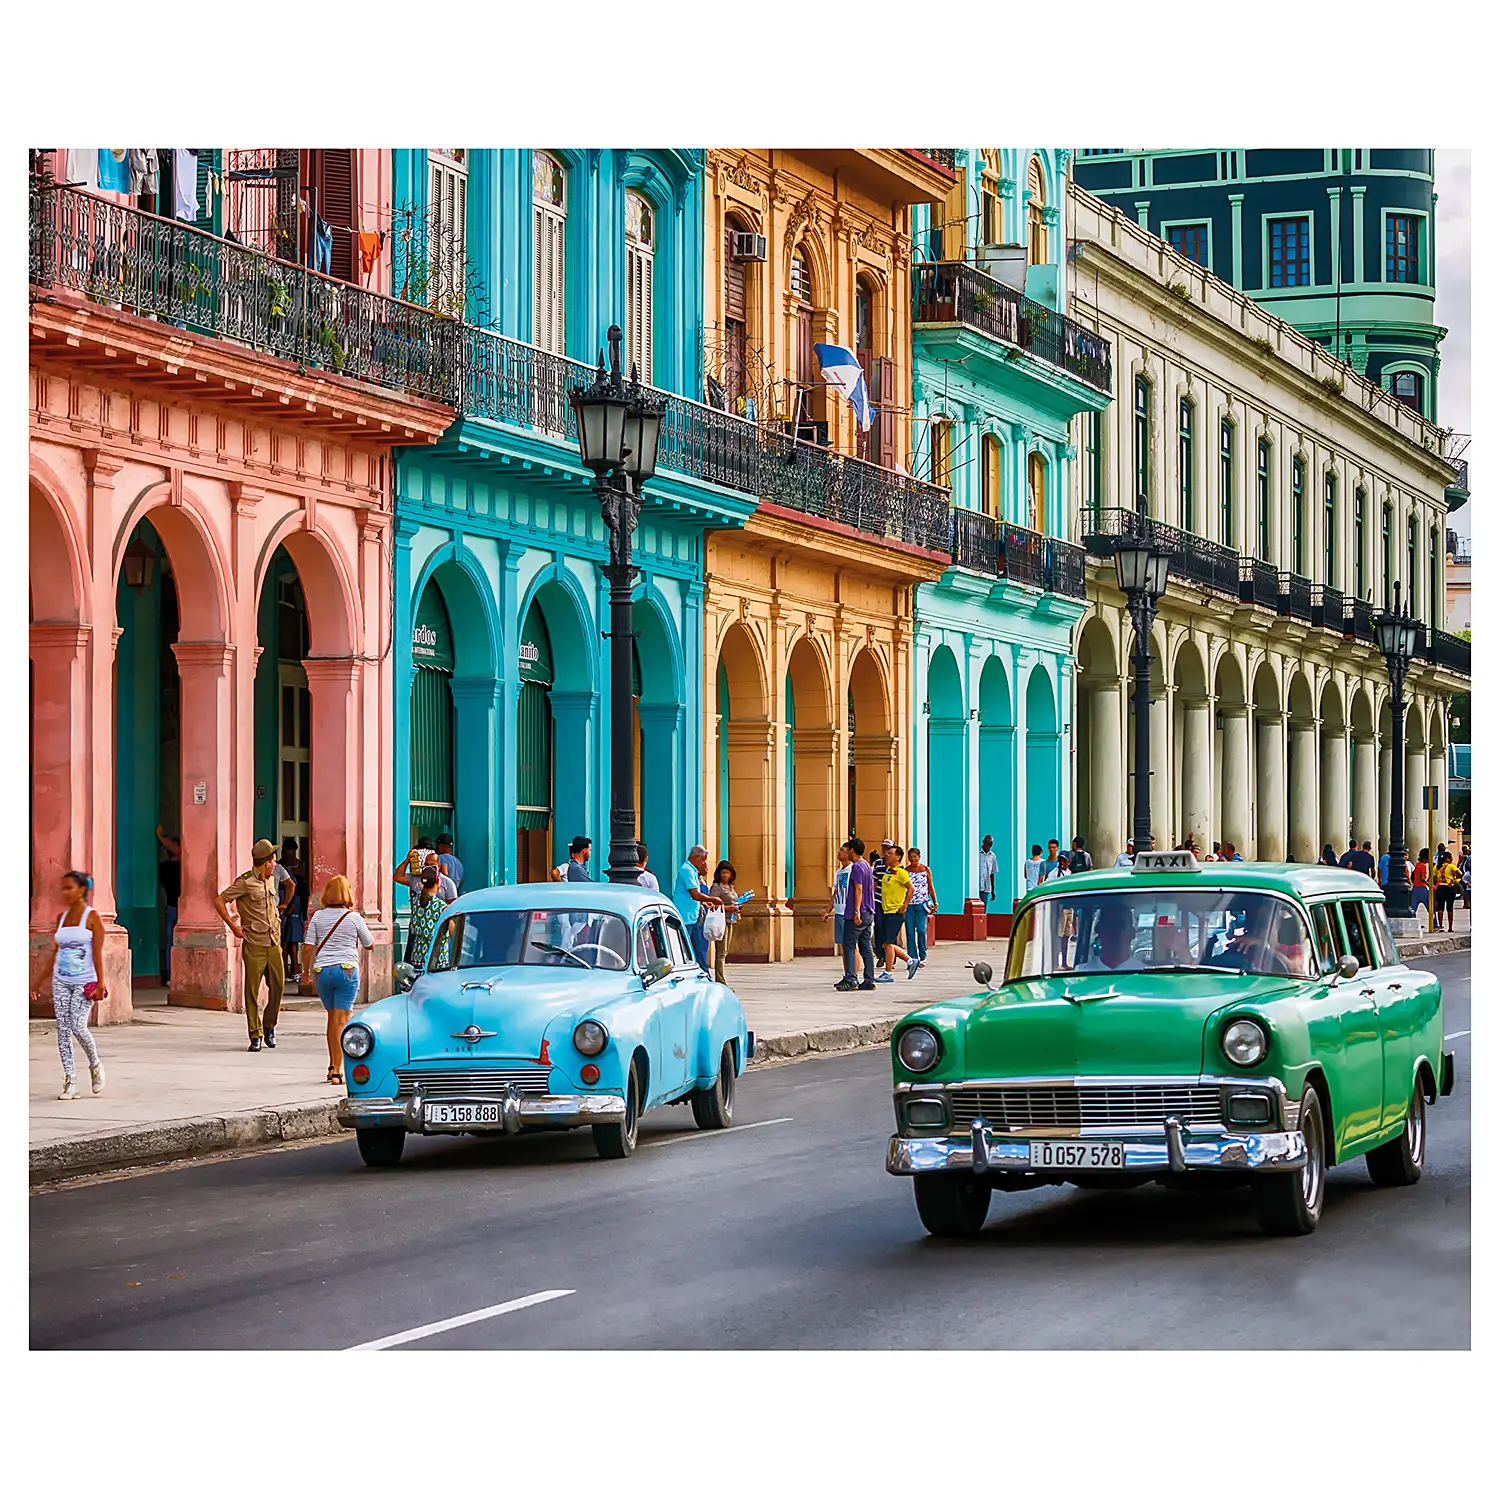 Fototapete Cuba